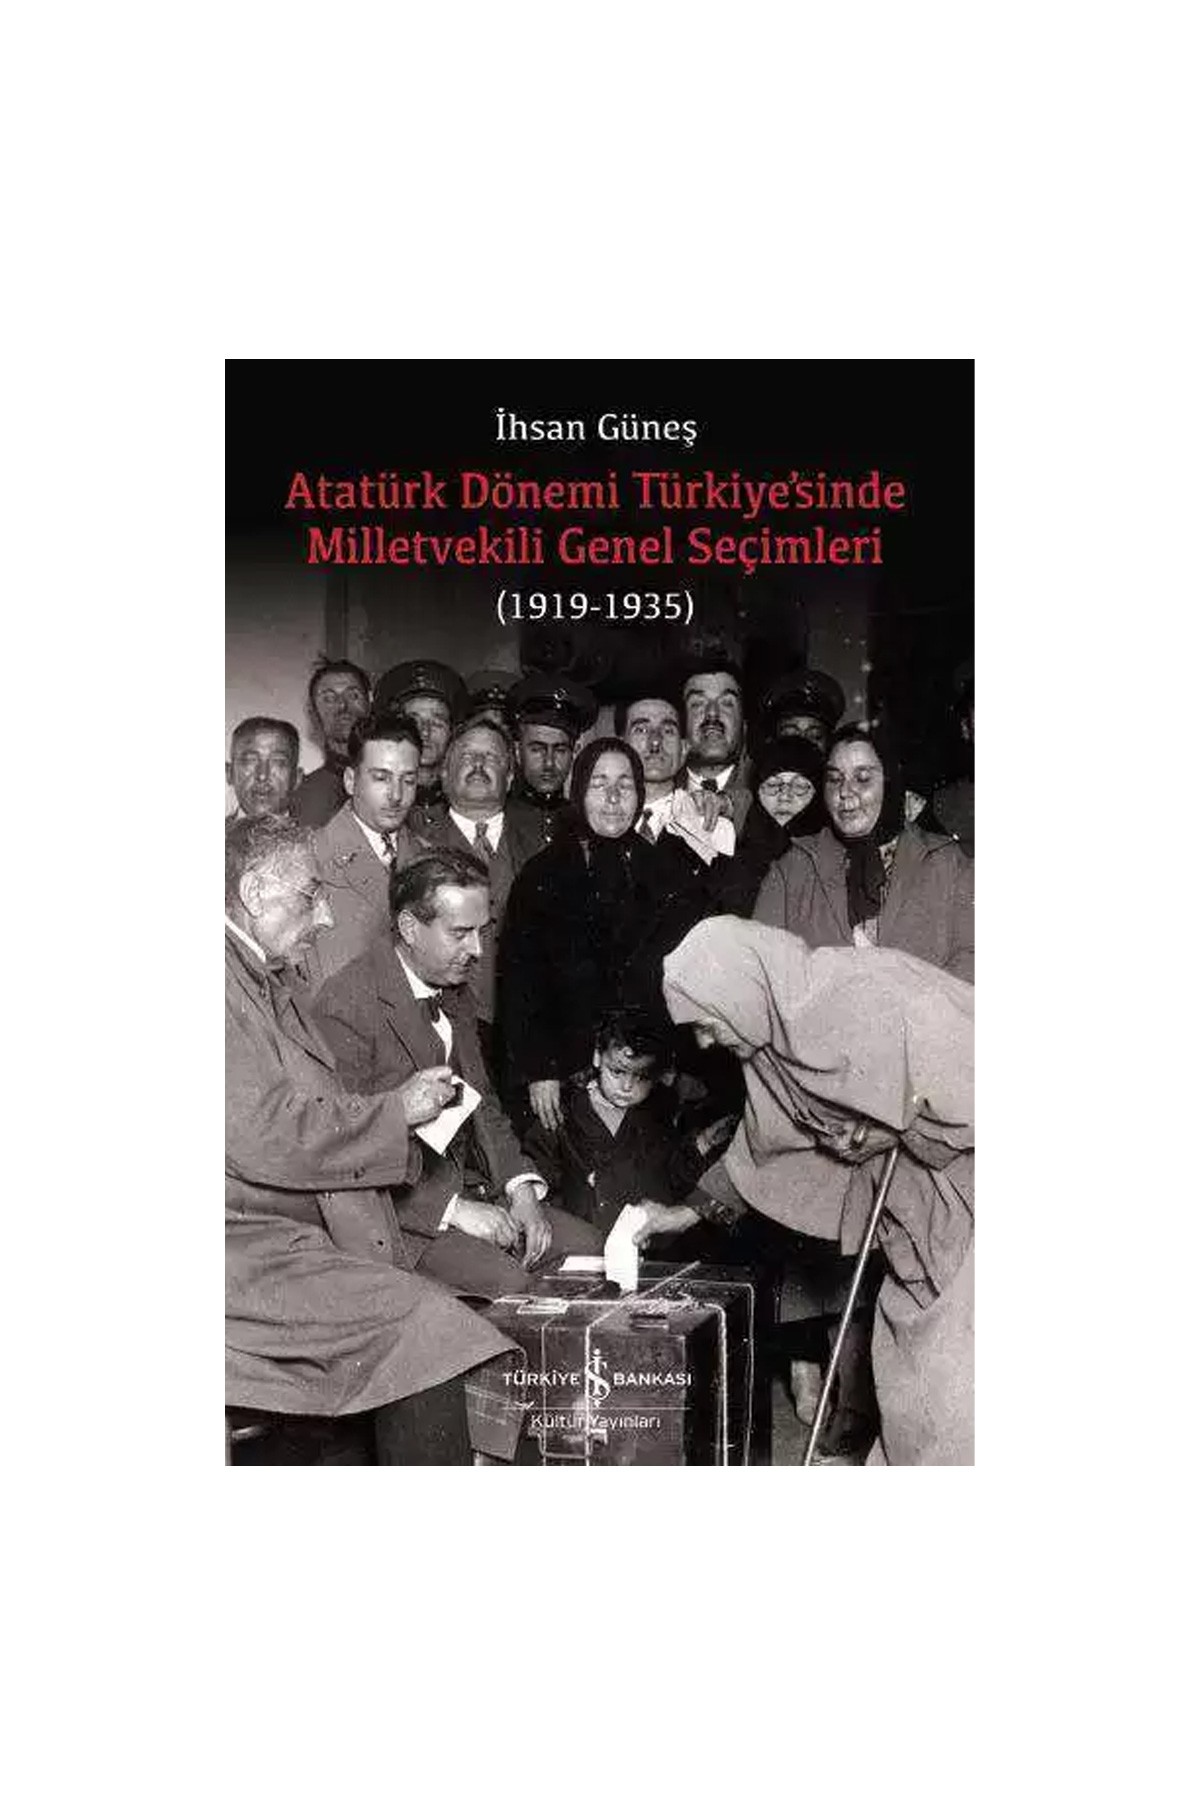 Türkiye İş Bankası Kültür Yayınları Atatürk Dönemi Türkiye’sinde Milletvekili Genel Seçimleri (1919-1935)